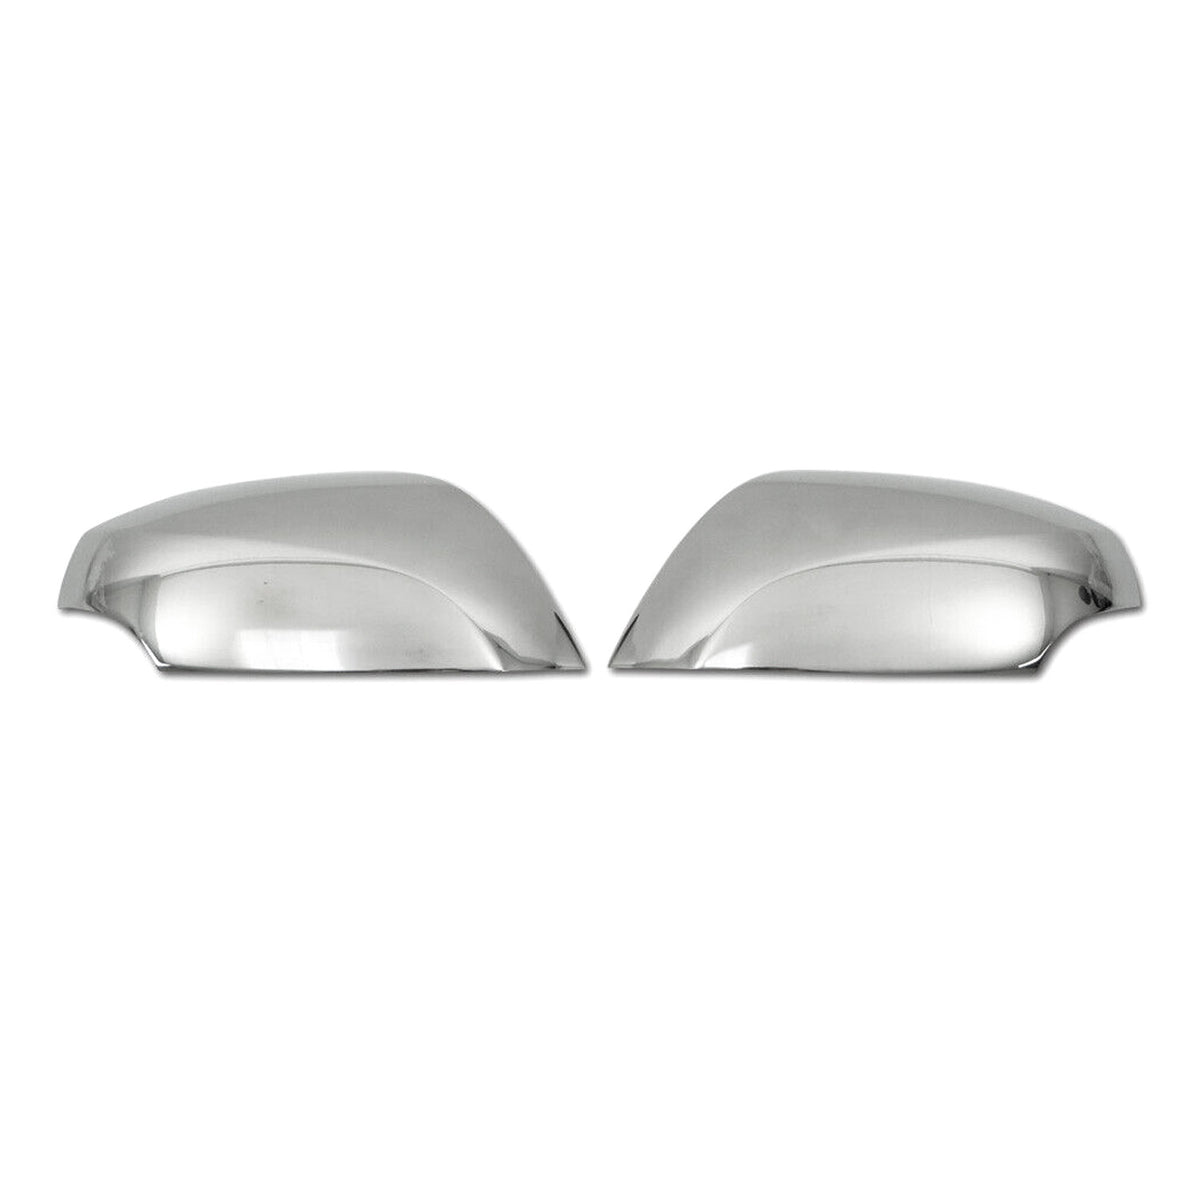 Spiegelkappen Spiegelabdeckung für Renault Latitude 2010-2015 Edelstahl Silber